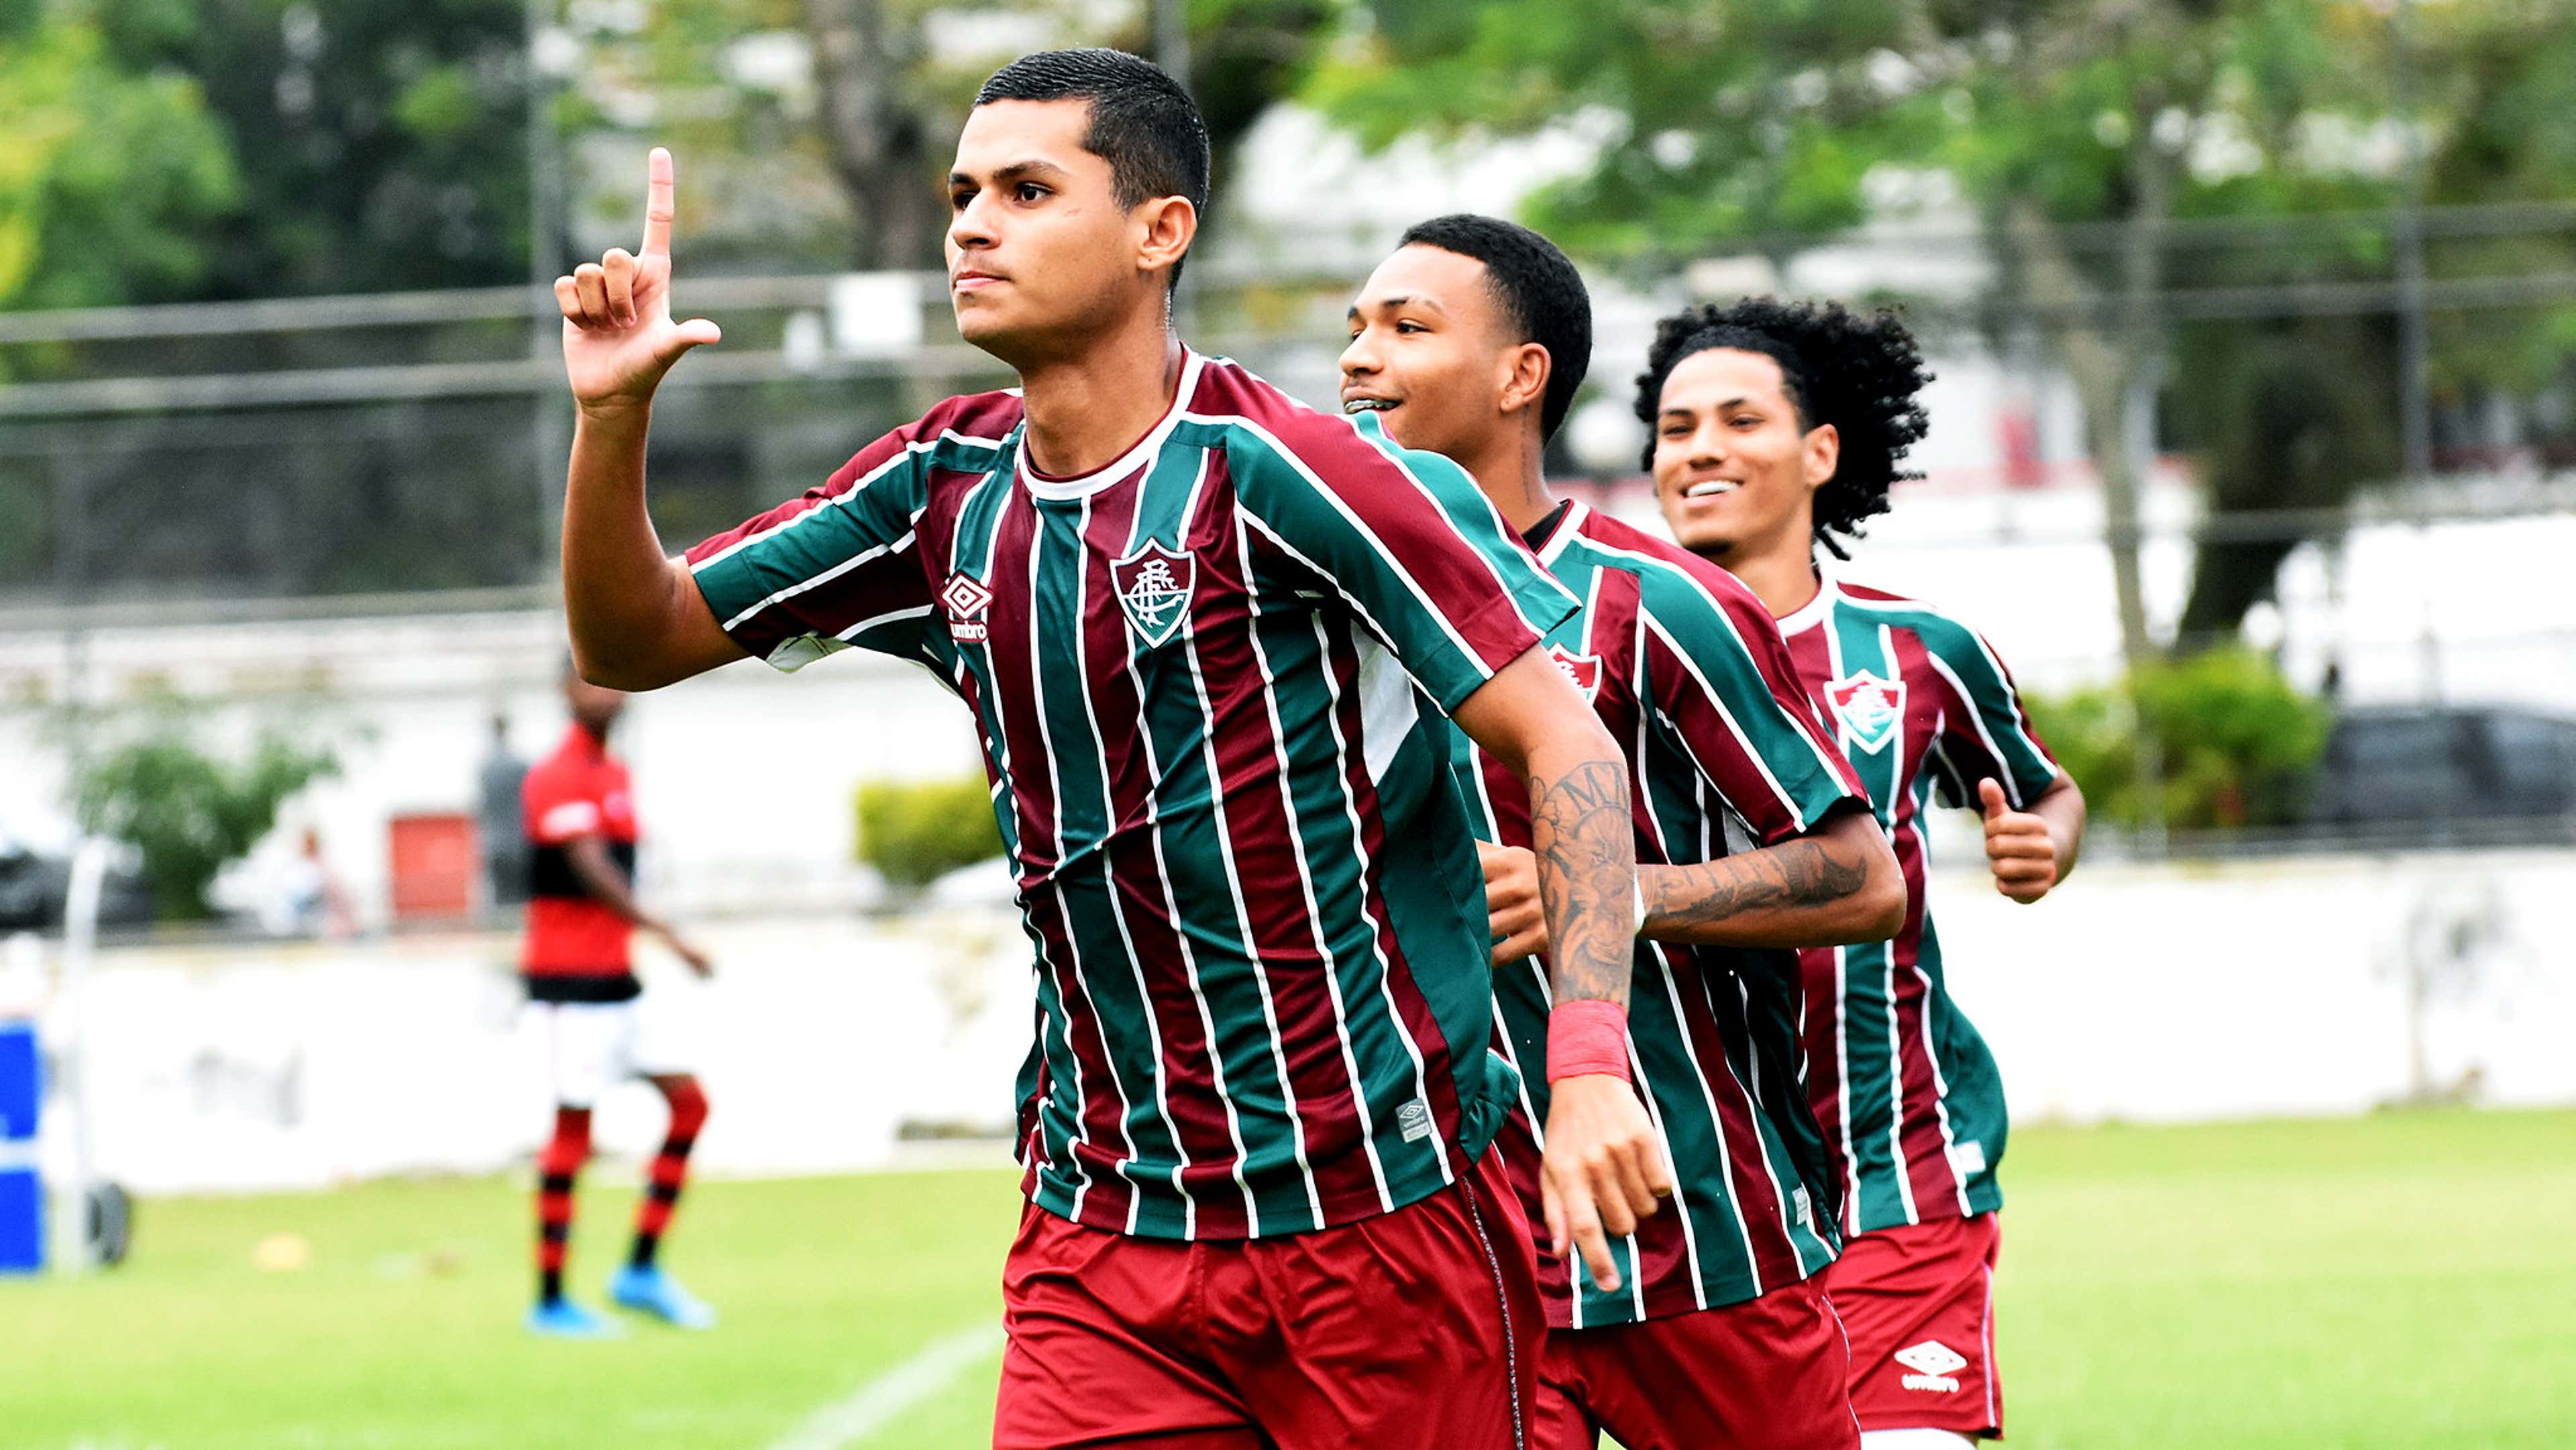 Fluminense está escalado para jogo do Brasileiro feminino A2 - Fluminense:  Últimas notícias, vídeos, onde assistir e próximos jogos